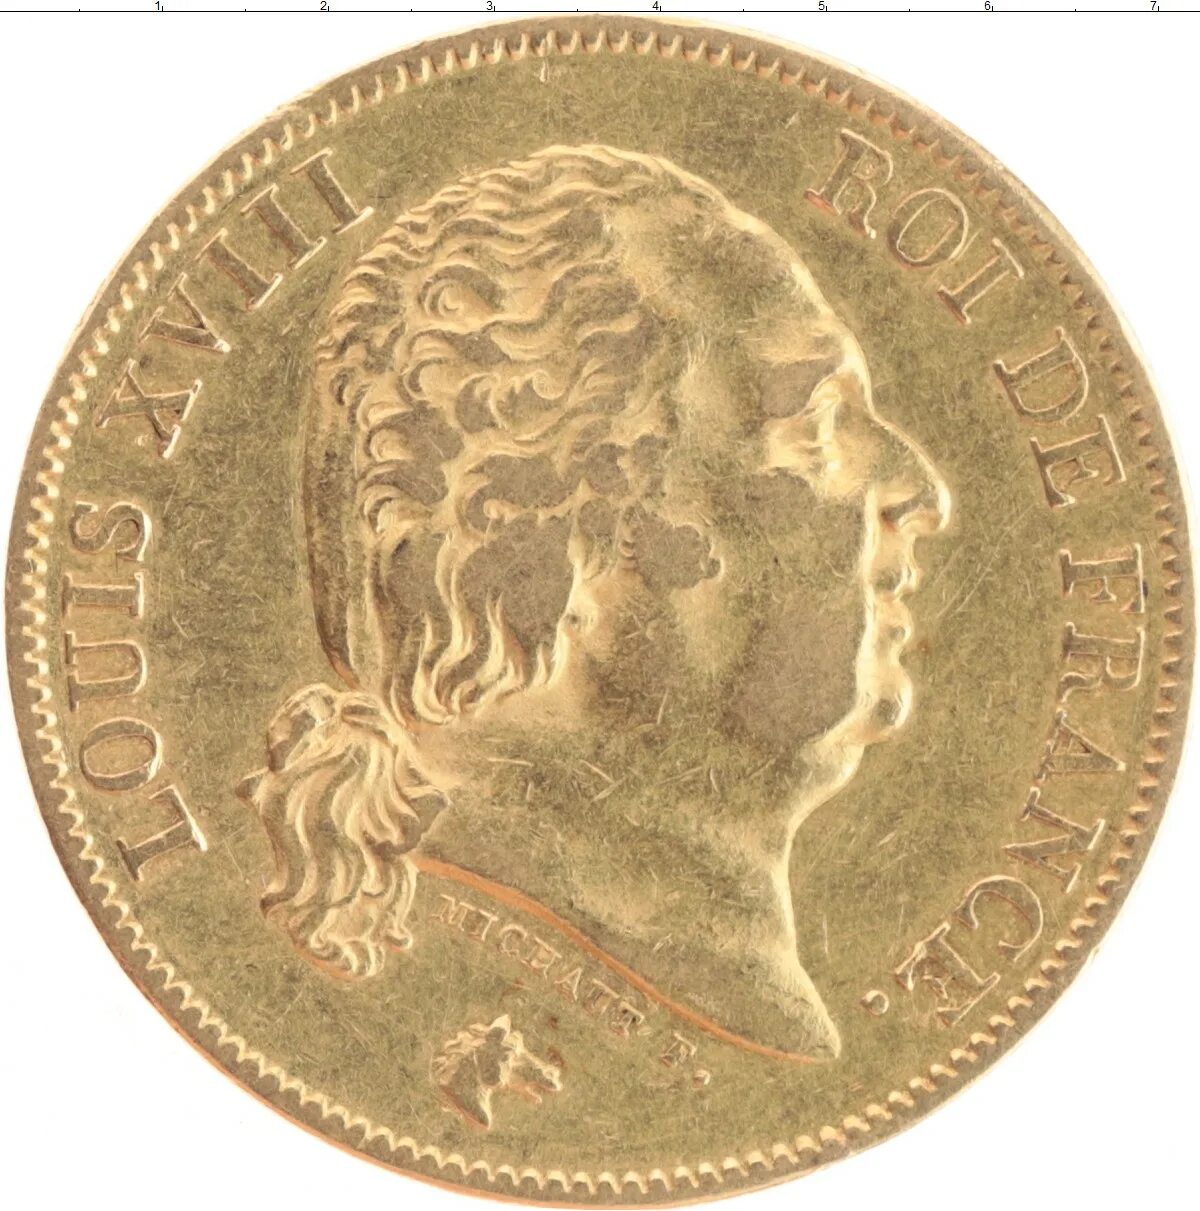 Француз 6 букв. (Золотая монета Франции)1894. 40 Франков. Франция золото. 40 Франков 1817.